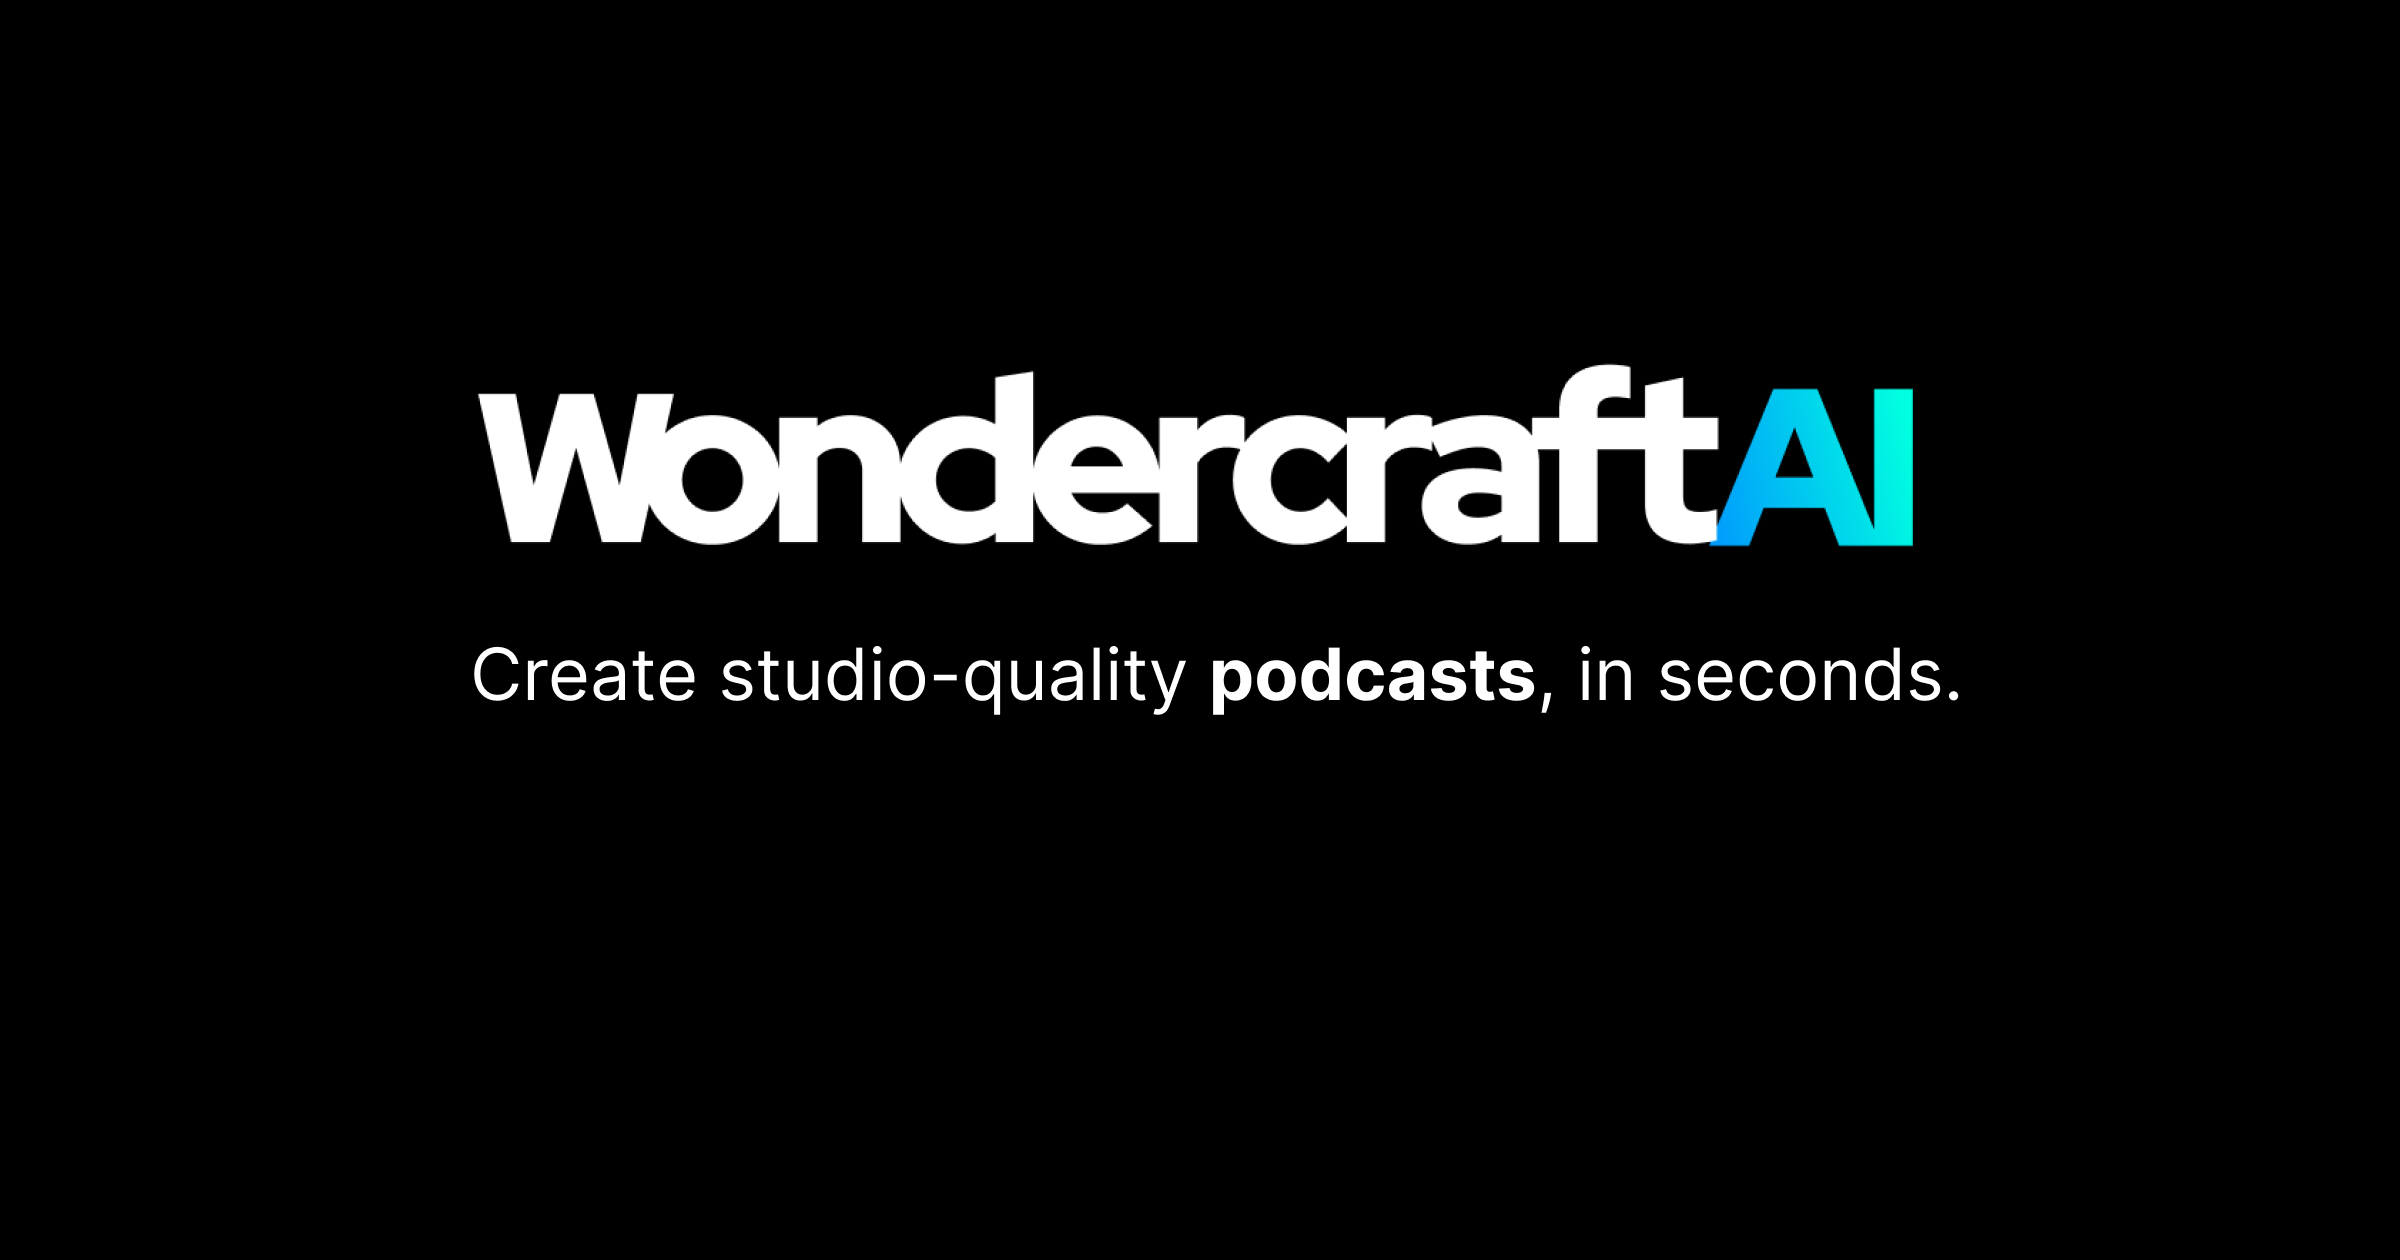 Wondercraft AI - Eine Plattform für Podcasting, um Podcasts in Studioqualität zu erstellen